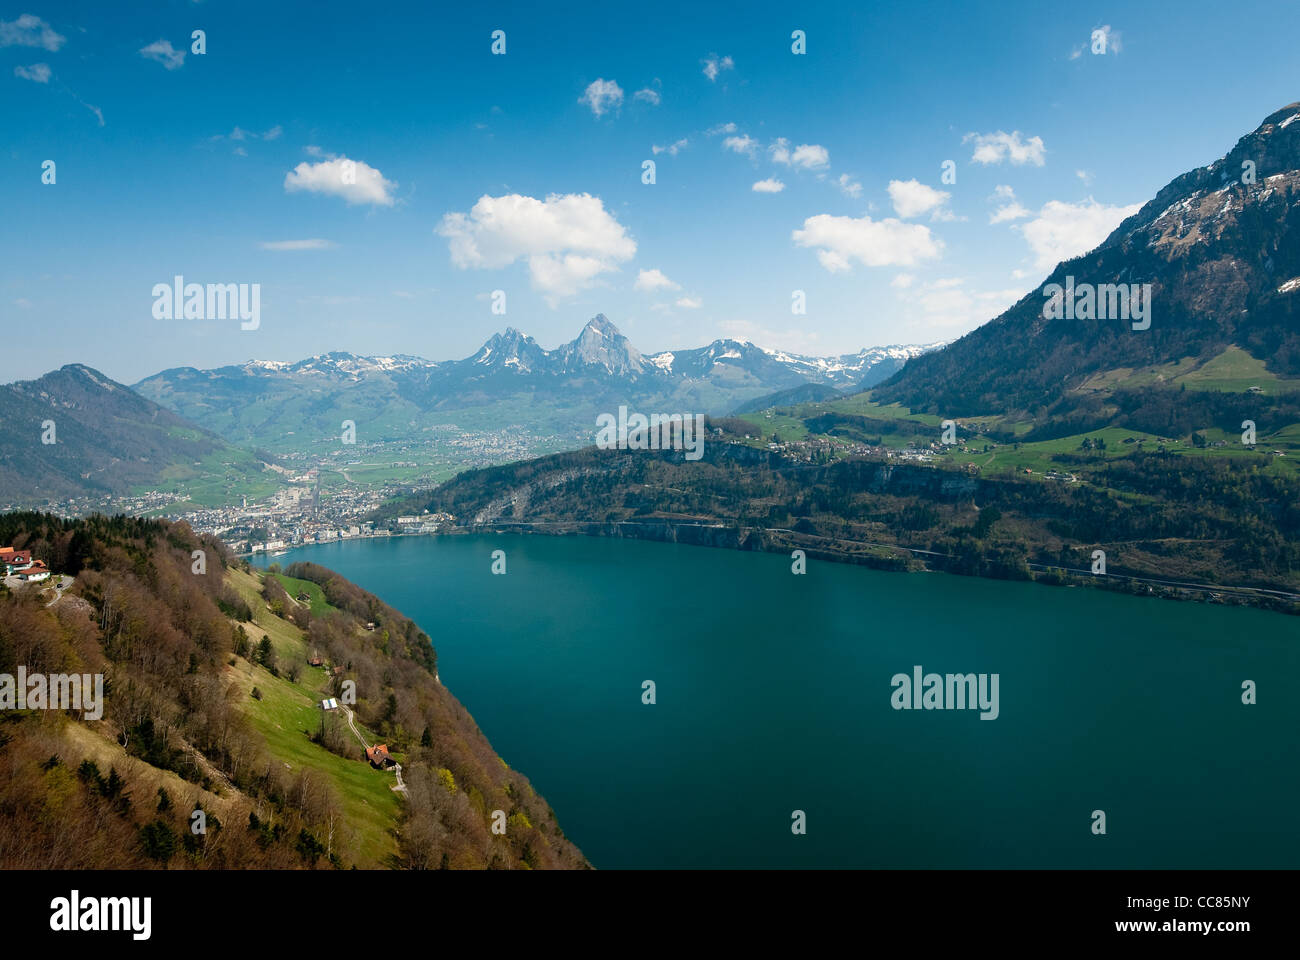 Vue panoramique des montagnes mythen, Brunnen et le lac de Lucerne, Suisse Banque D'Images